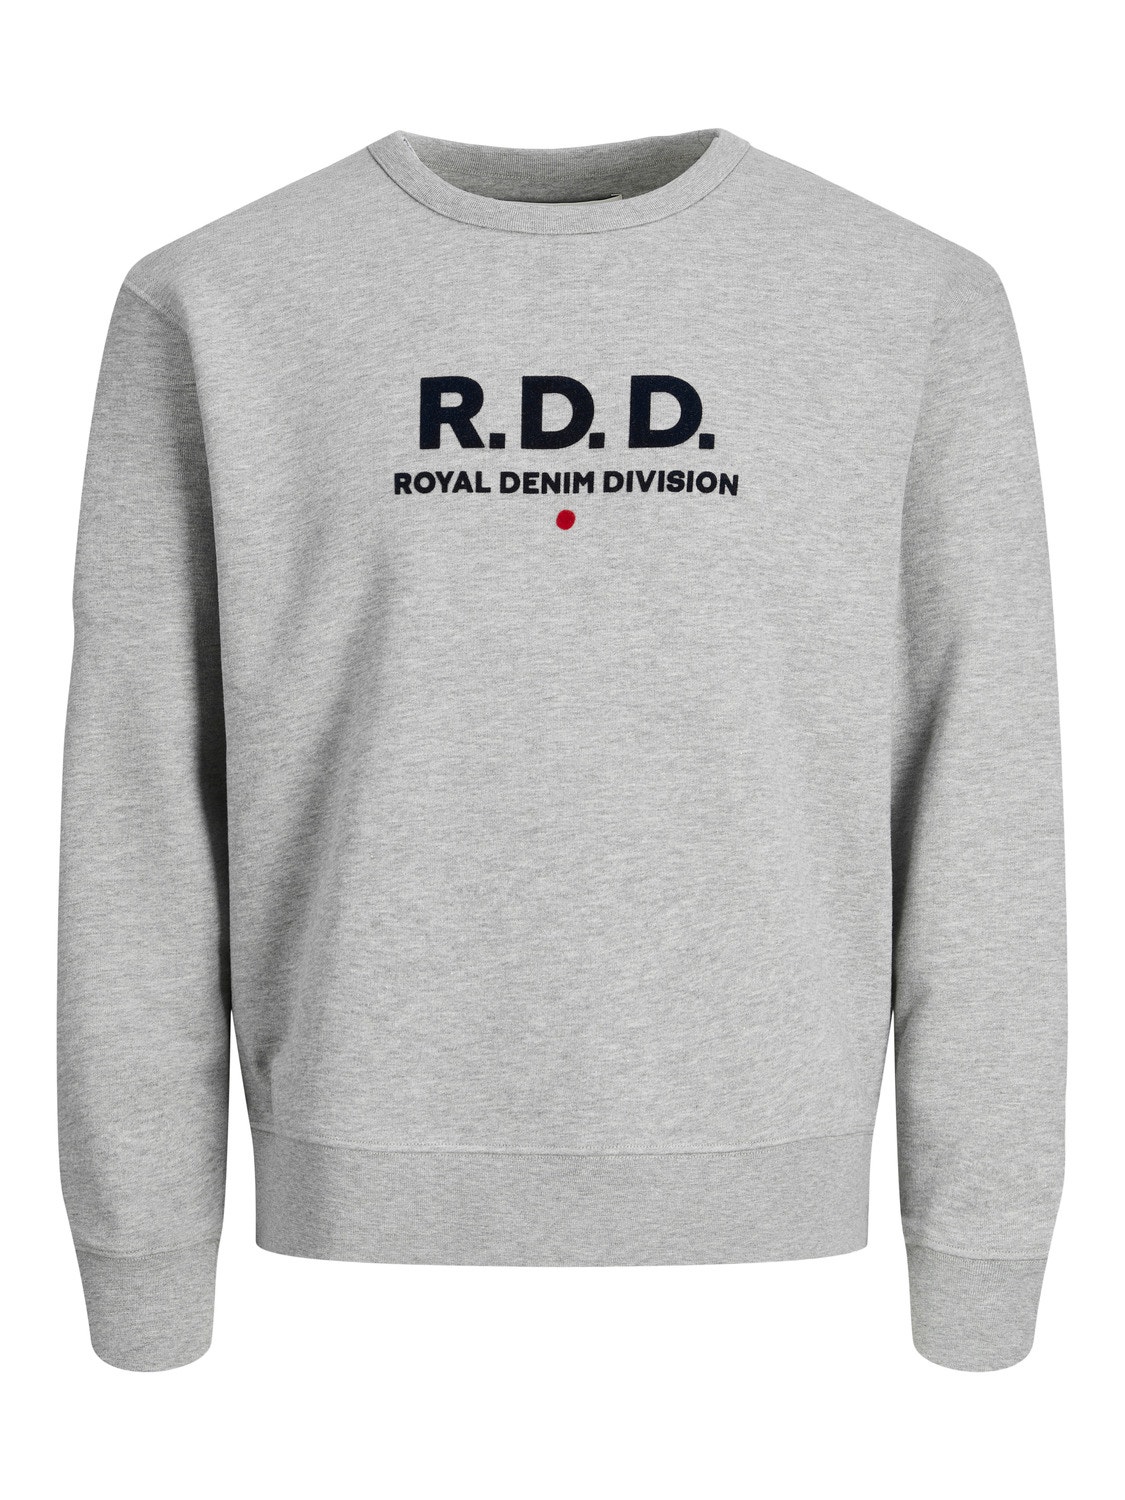 Jack & Jones RDD Logo Crew neck Sweatshirt -Light Grey Melange - 12232808